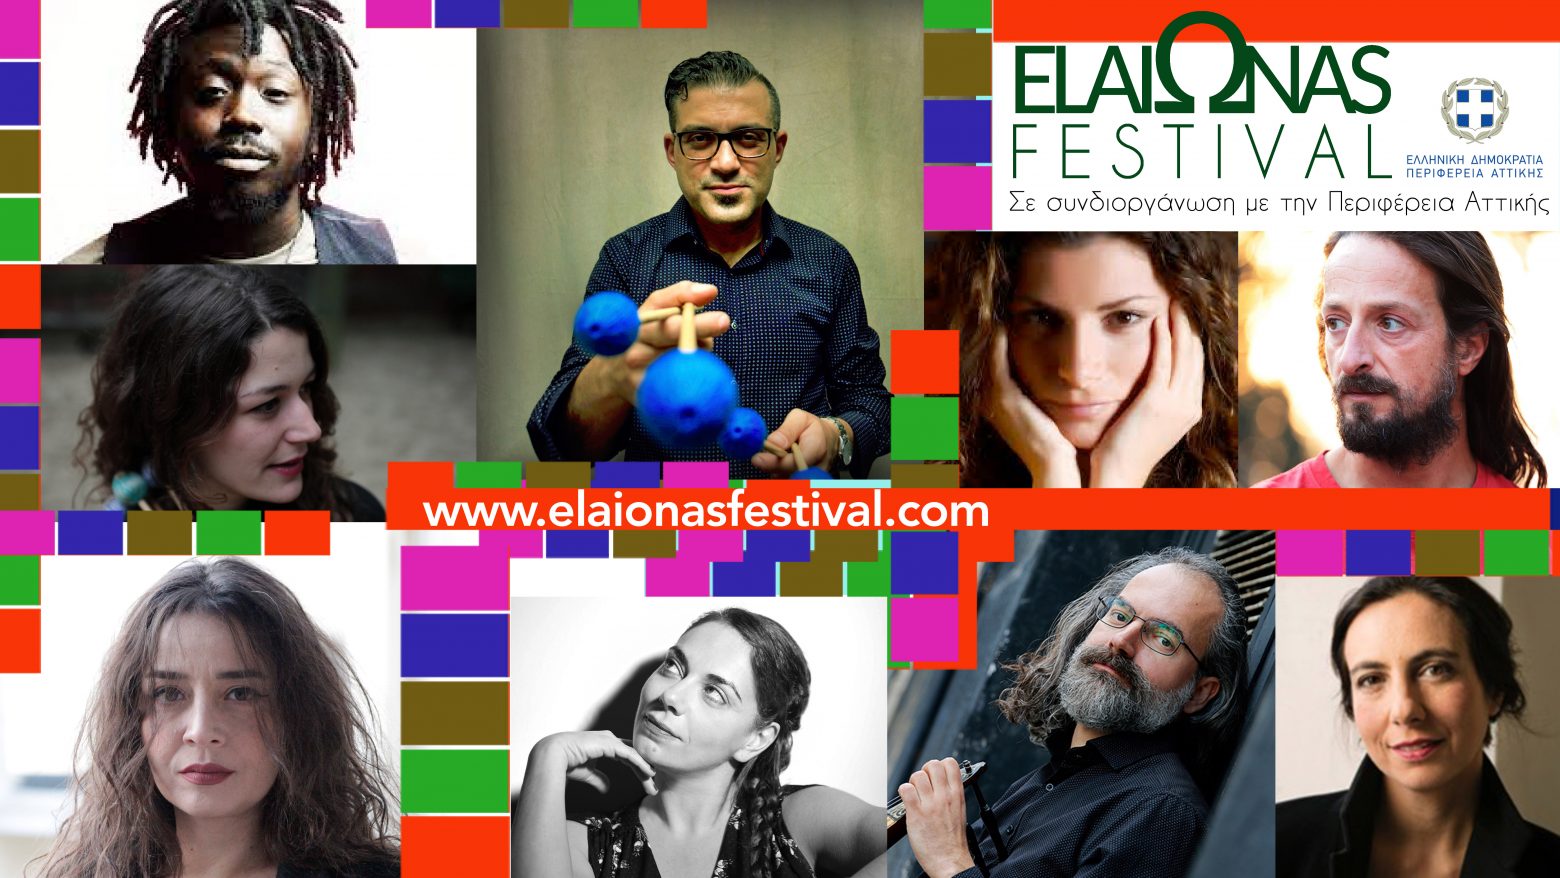 Το ElaiΩnas Festival επιστρέφει για 7η συνεχή χρονιά στην Αθήνα